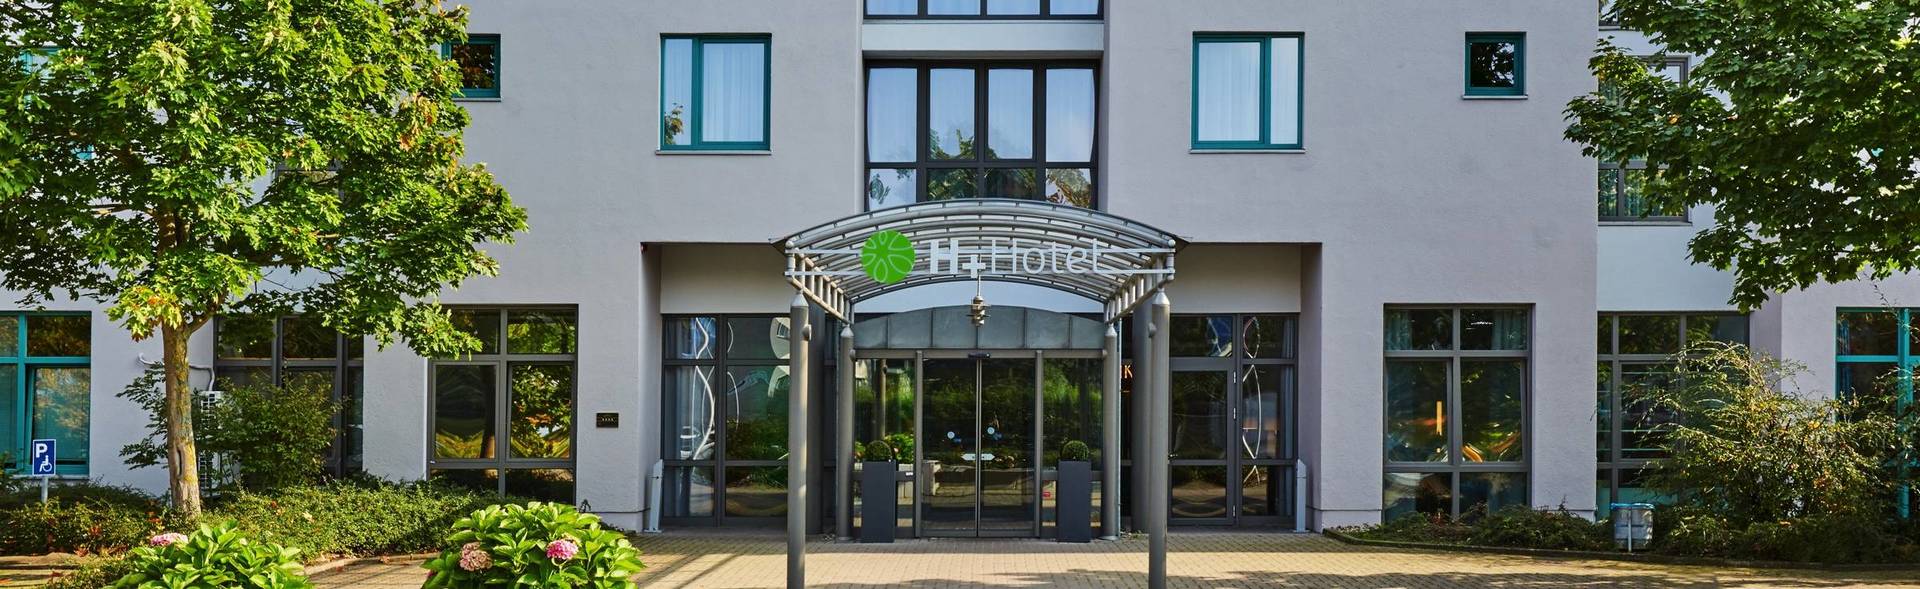 Zufriedenheit im H+ Hotel Hannover - Offizielle Webseite